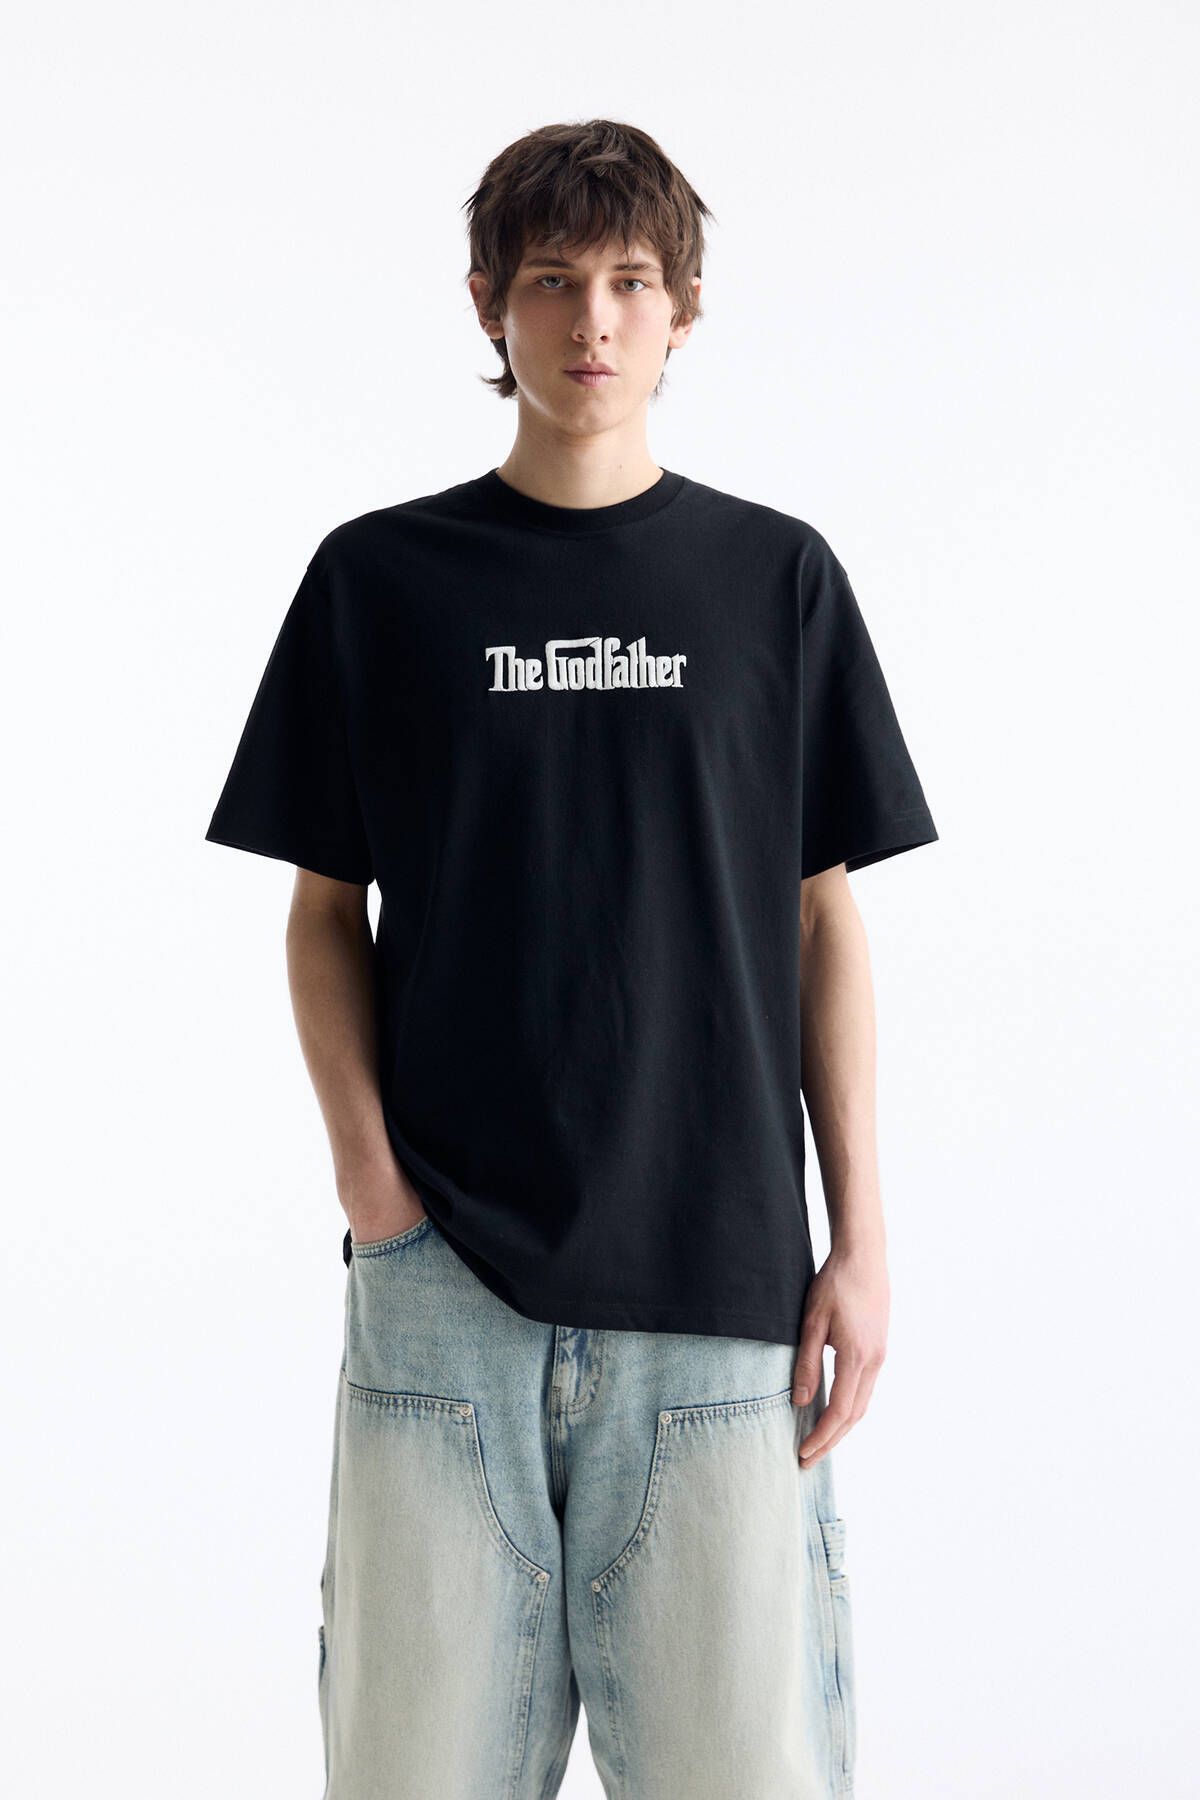 Pull & Bear The Godfather kısa kollu t-shirt